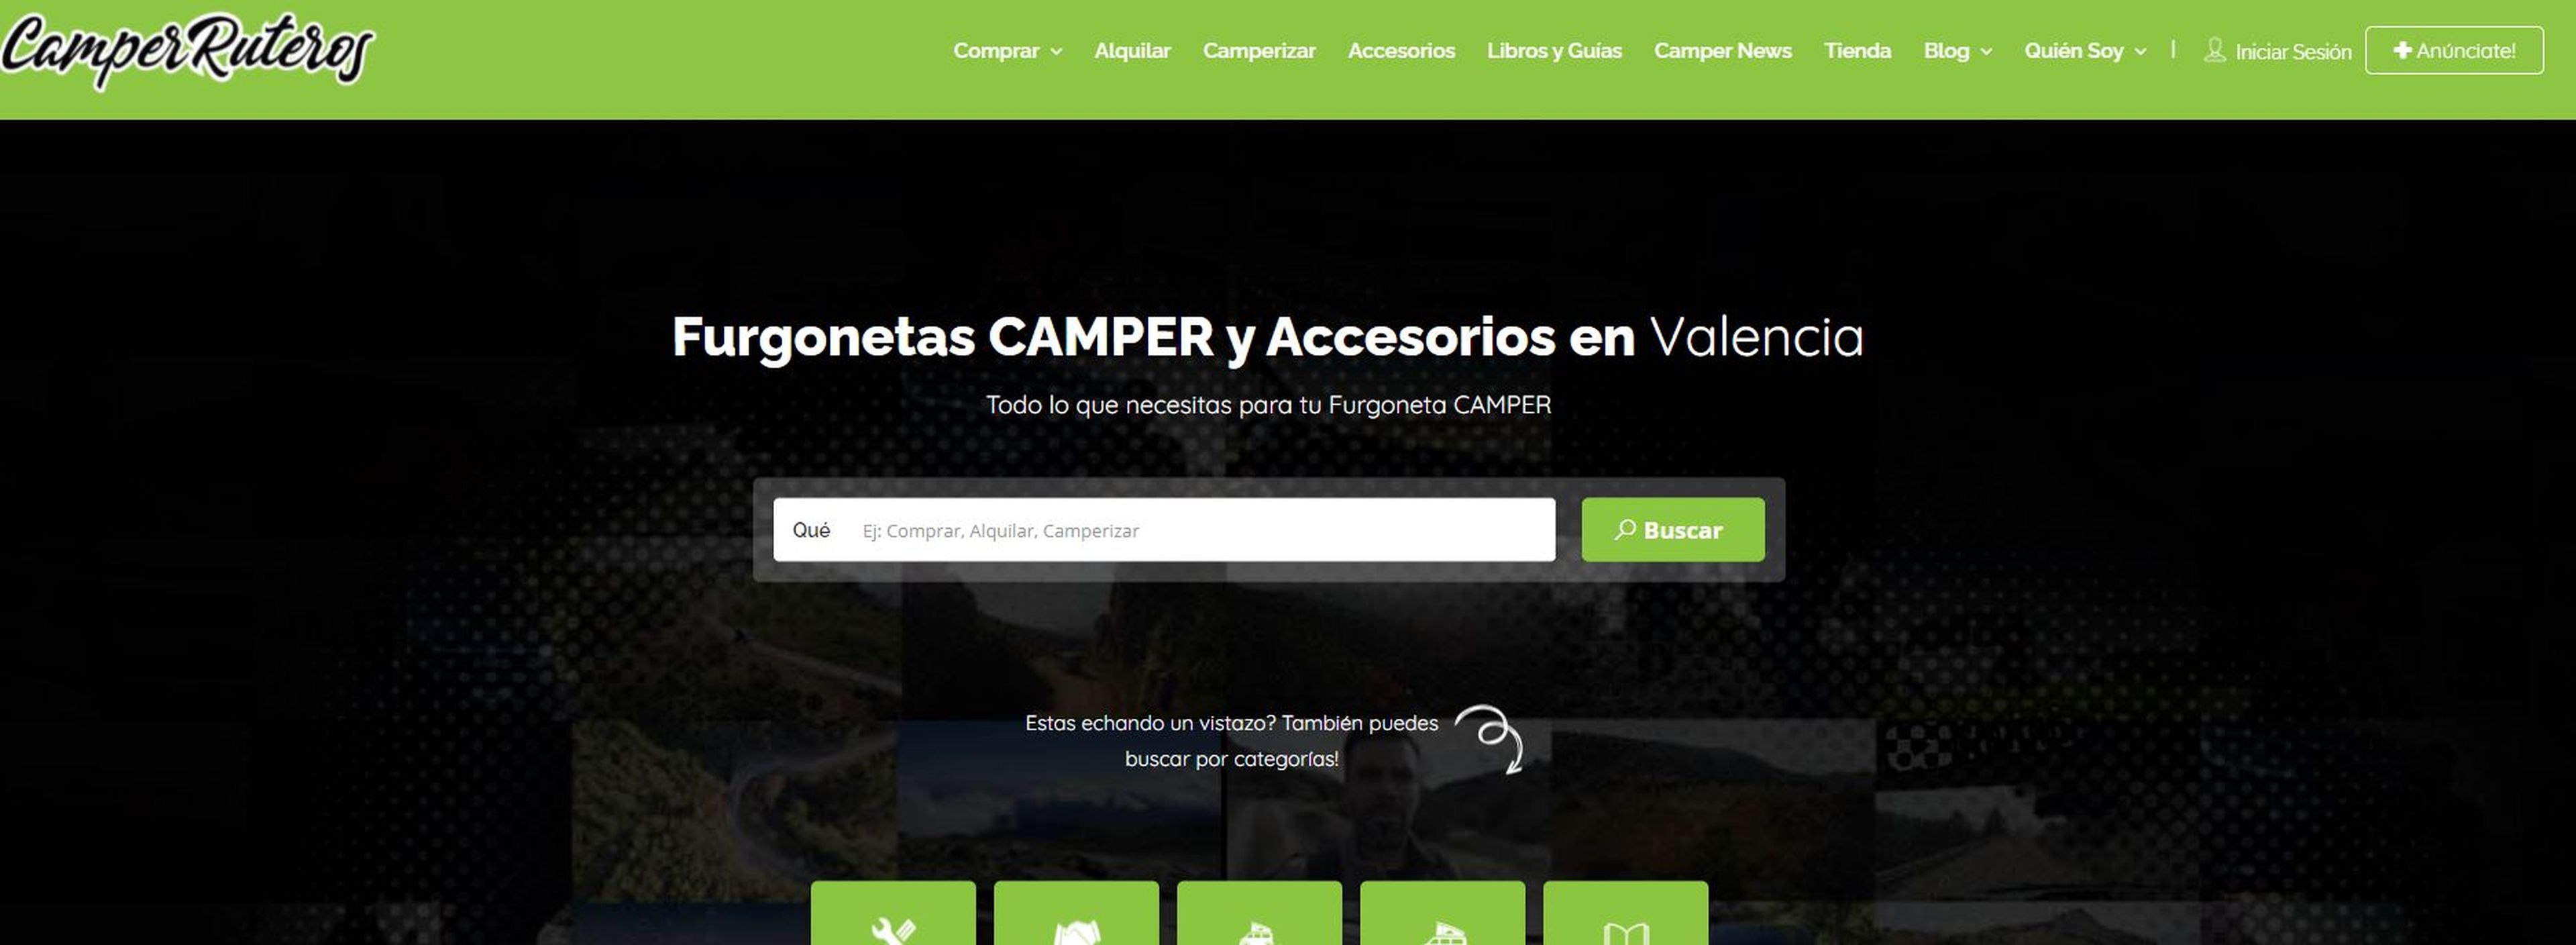 Portada principal de la web de 'CamperRuteros'.